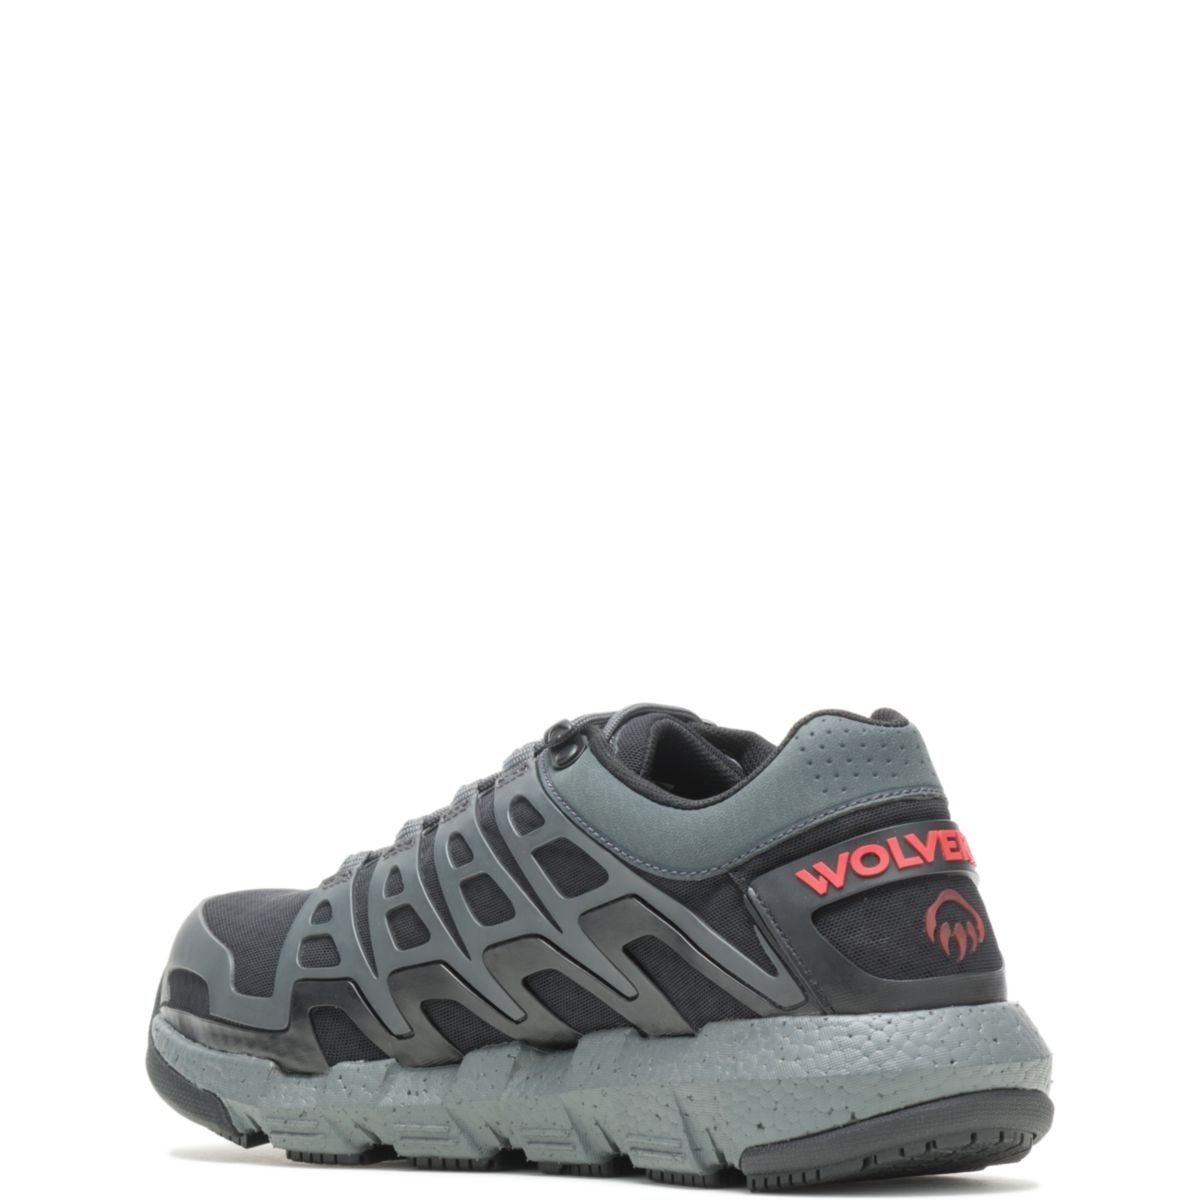 WOLVERINE Men's Rev Vent UltraSpringâ¢ DuraShocksÂ® CarbonMAXÂ® Composite Toe Work Shoe Charcoal - W211016 CHARCOAL - CHARCOAL, 8.5 X-Wide